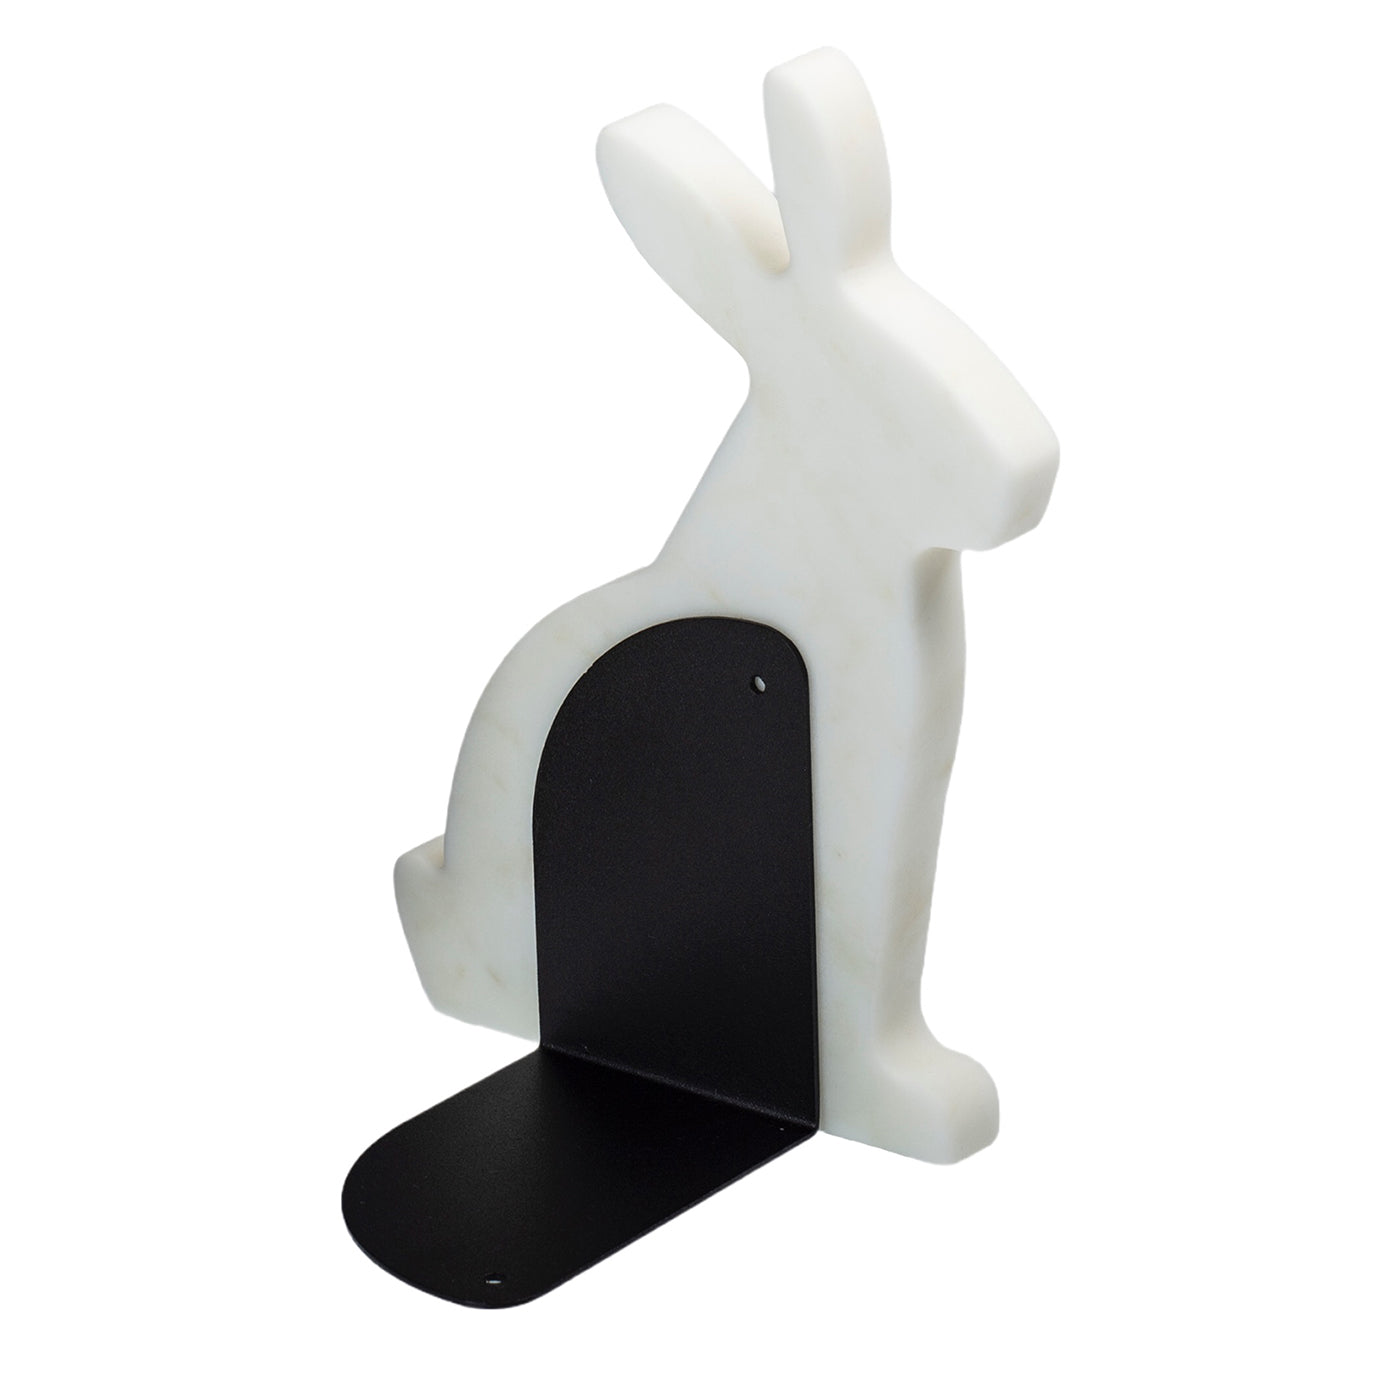 Juego de 2 sujetalibros de carrara blanca Bunny by Alessandra Grasso - Vista alternativa 2